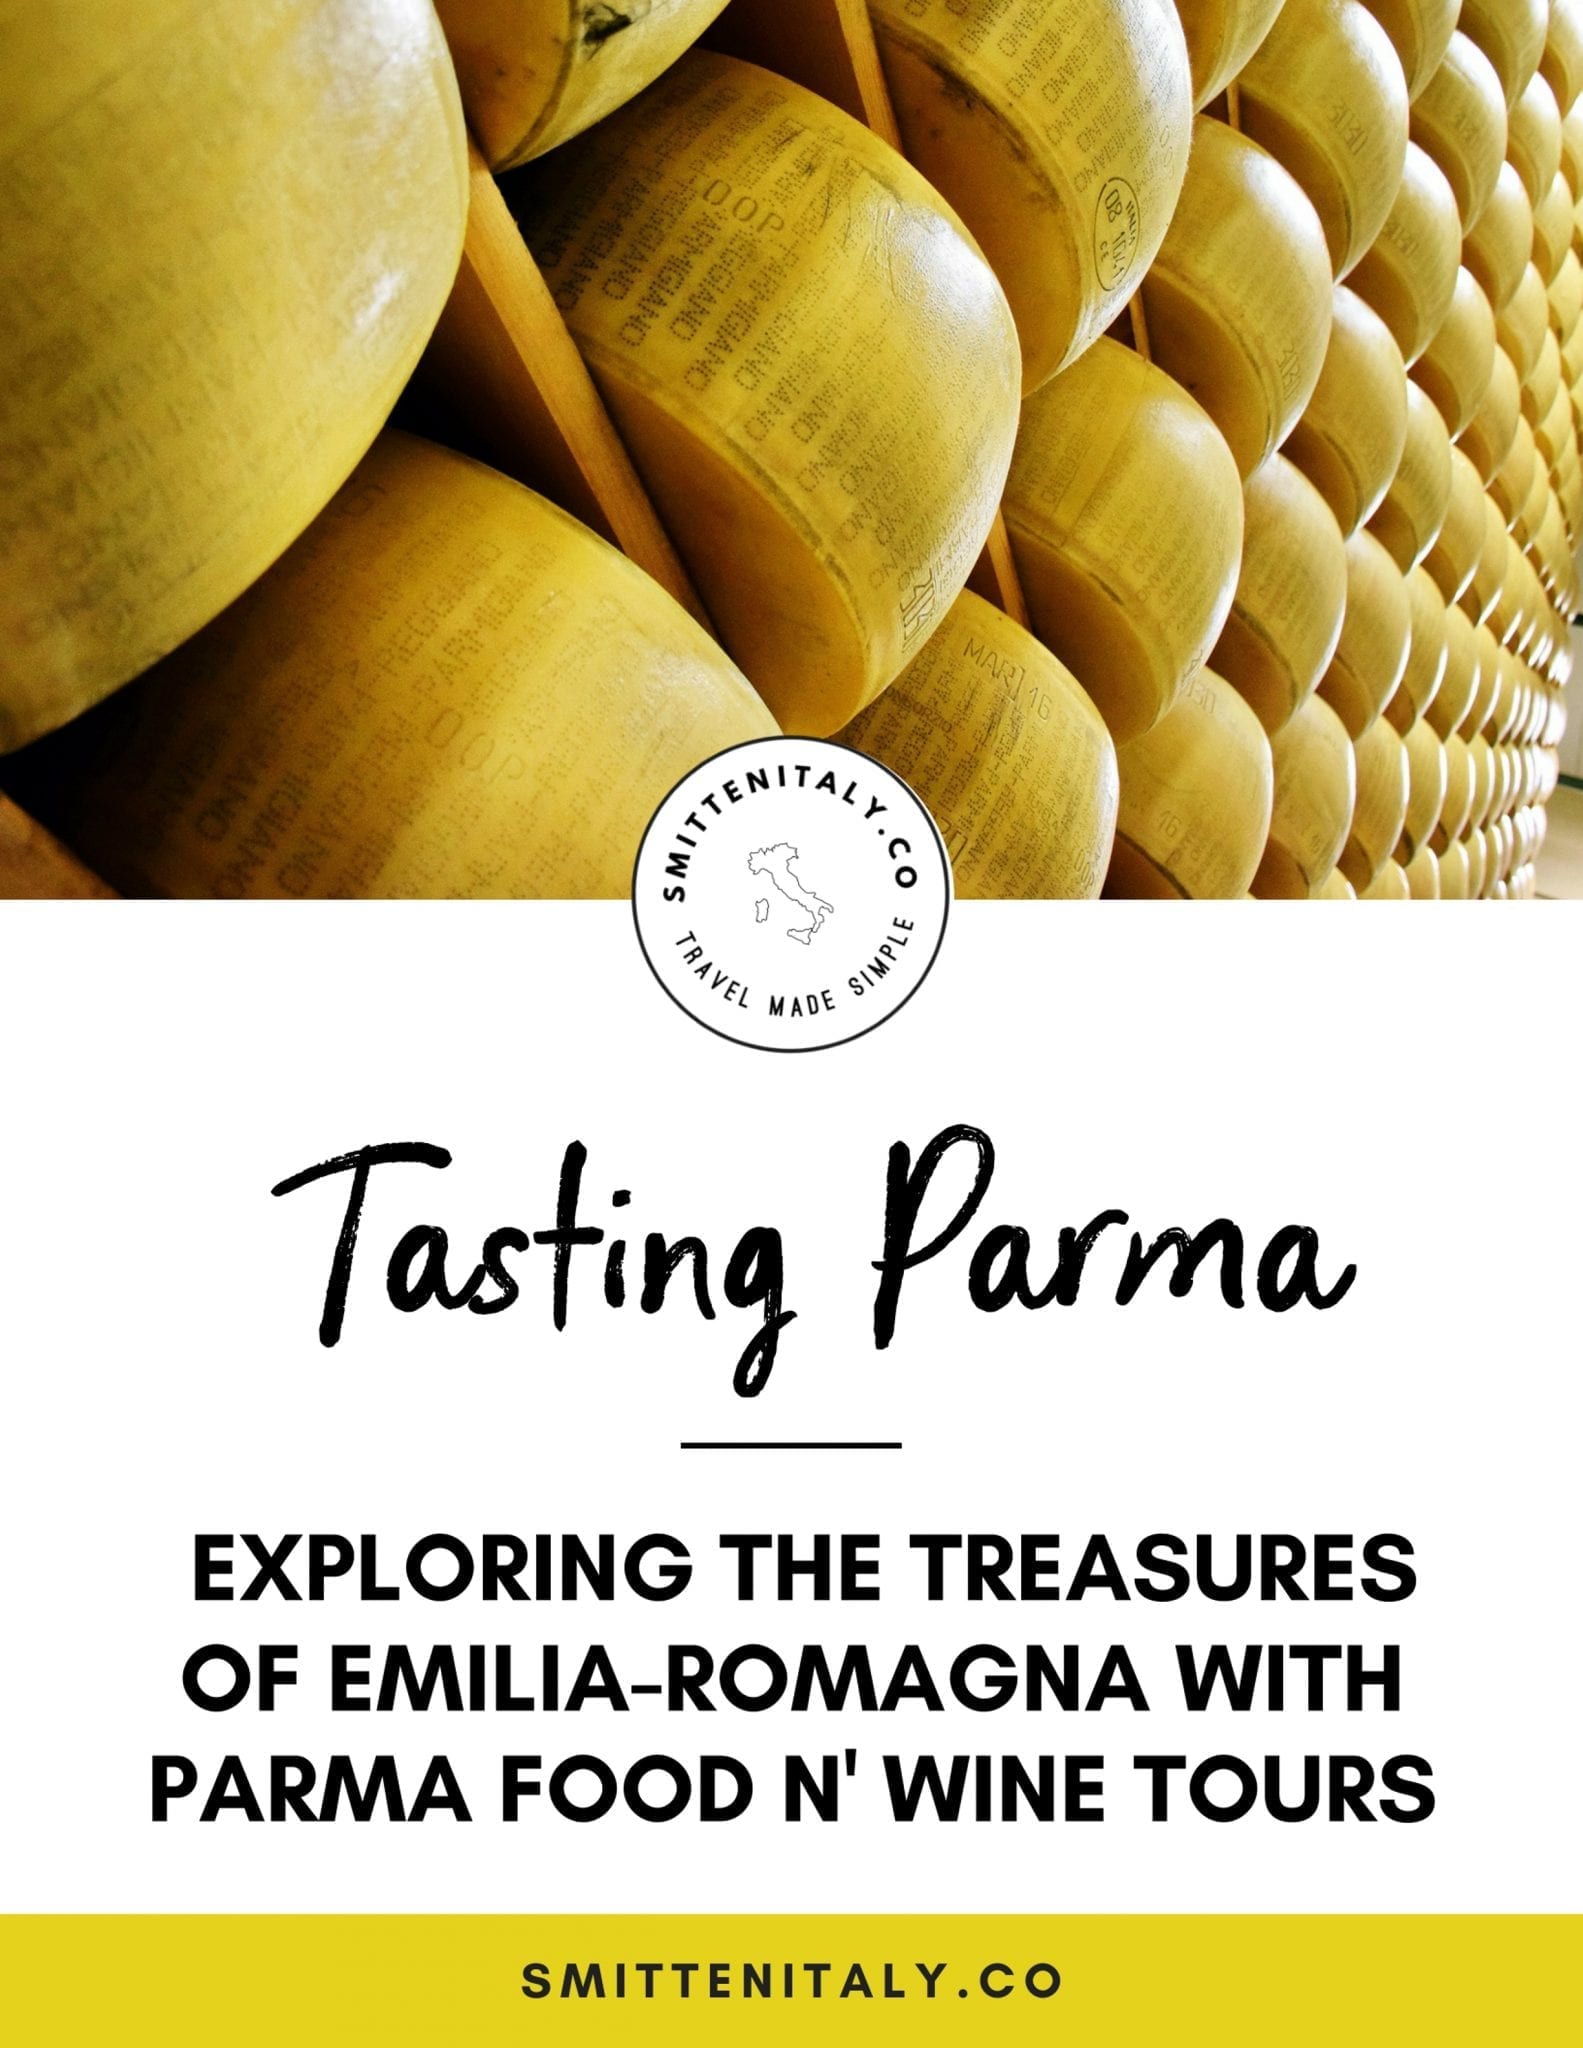 Parma Food Tour Review